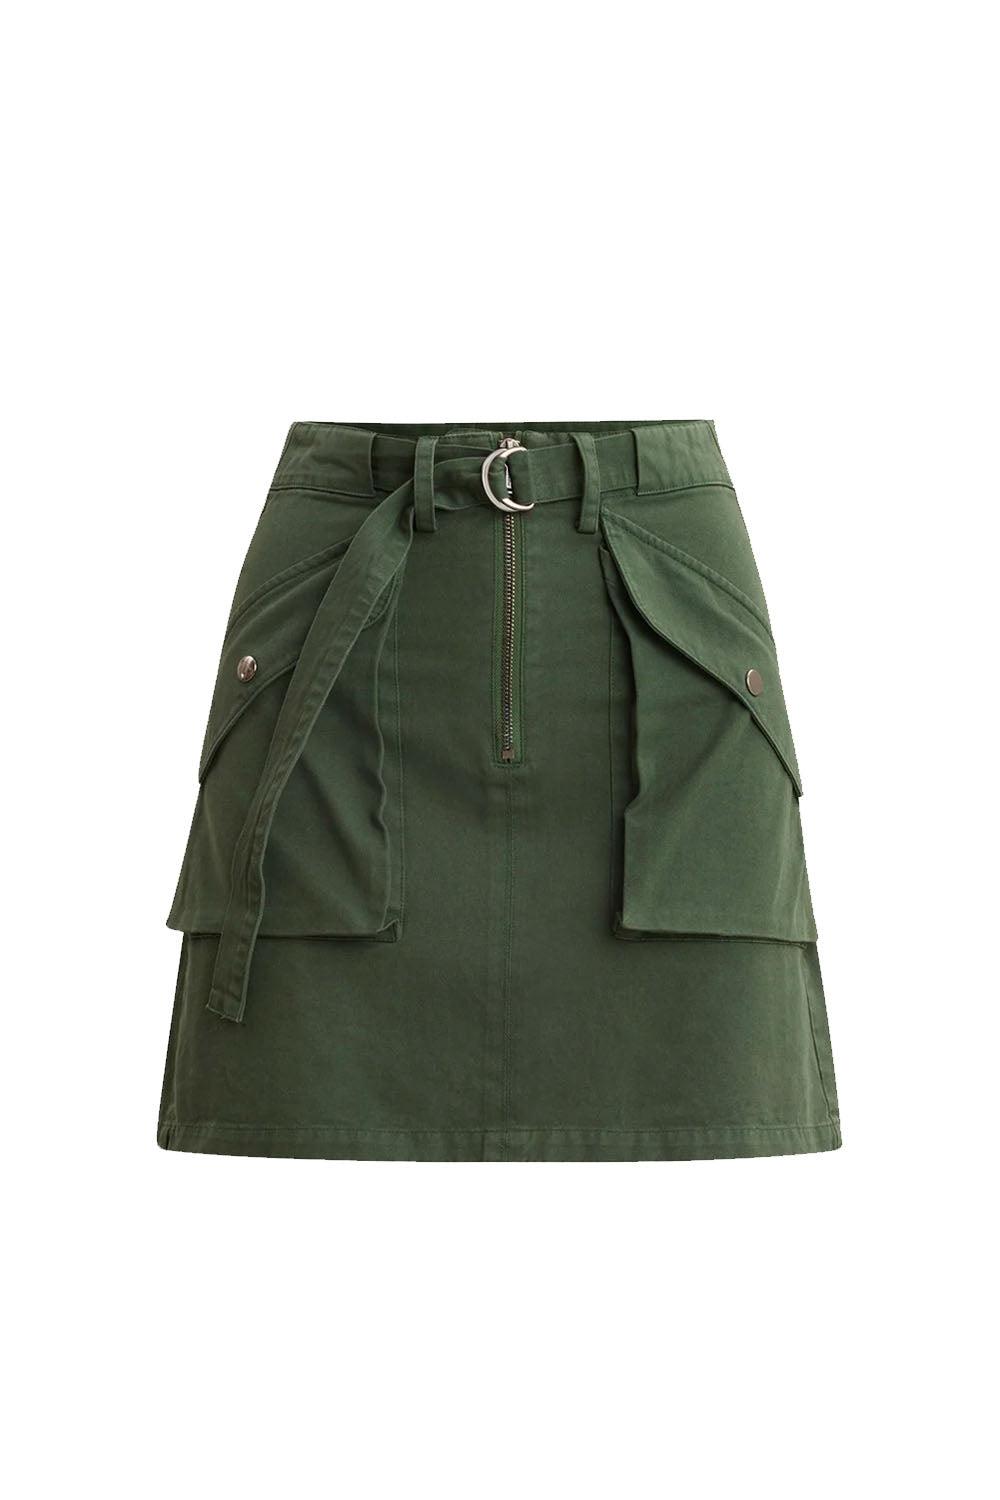 Brita Skirt Green